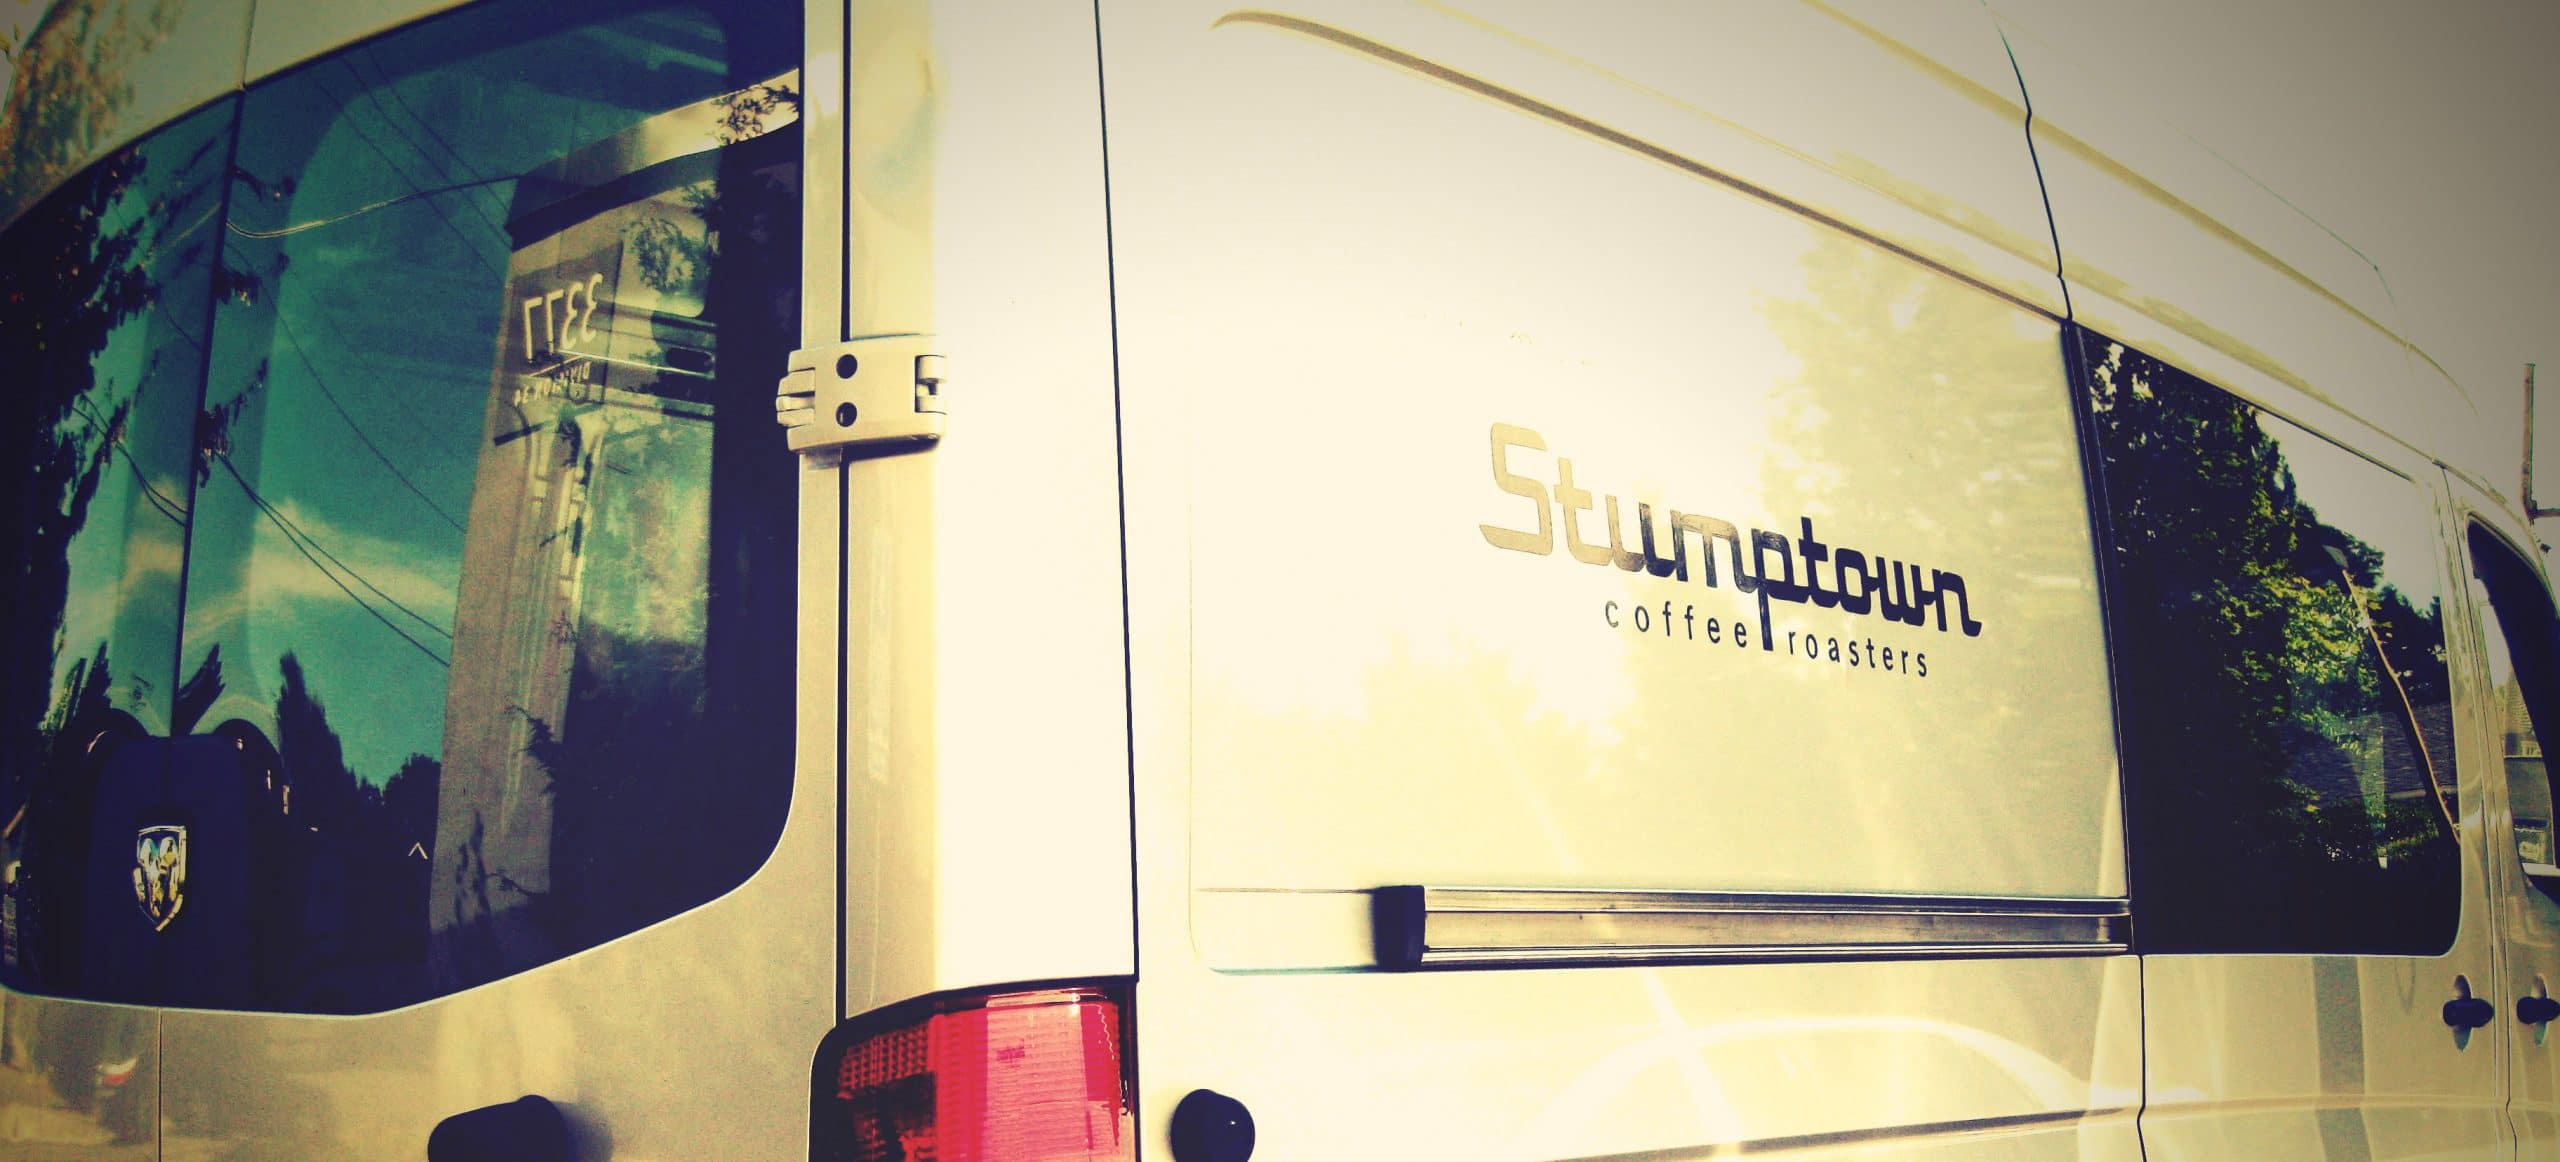 Stumptown Coffee Roasters Van Logo